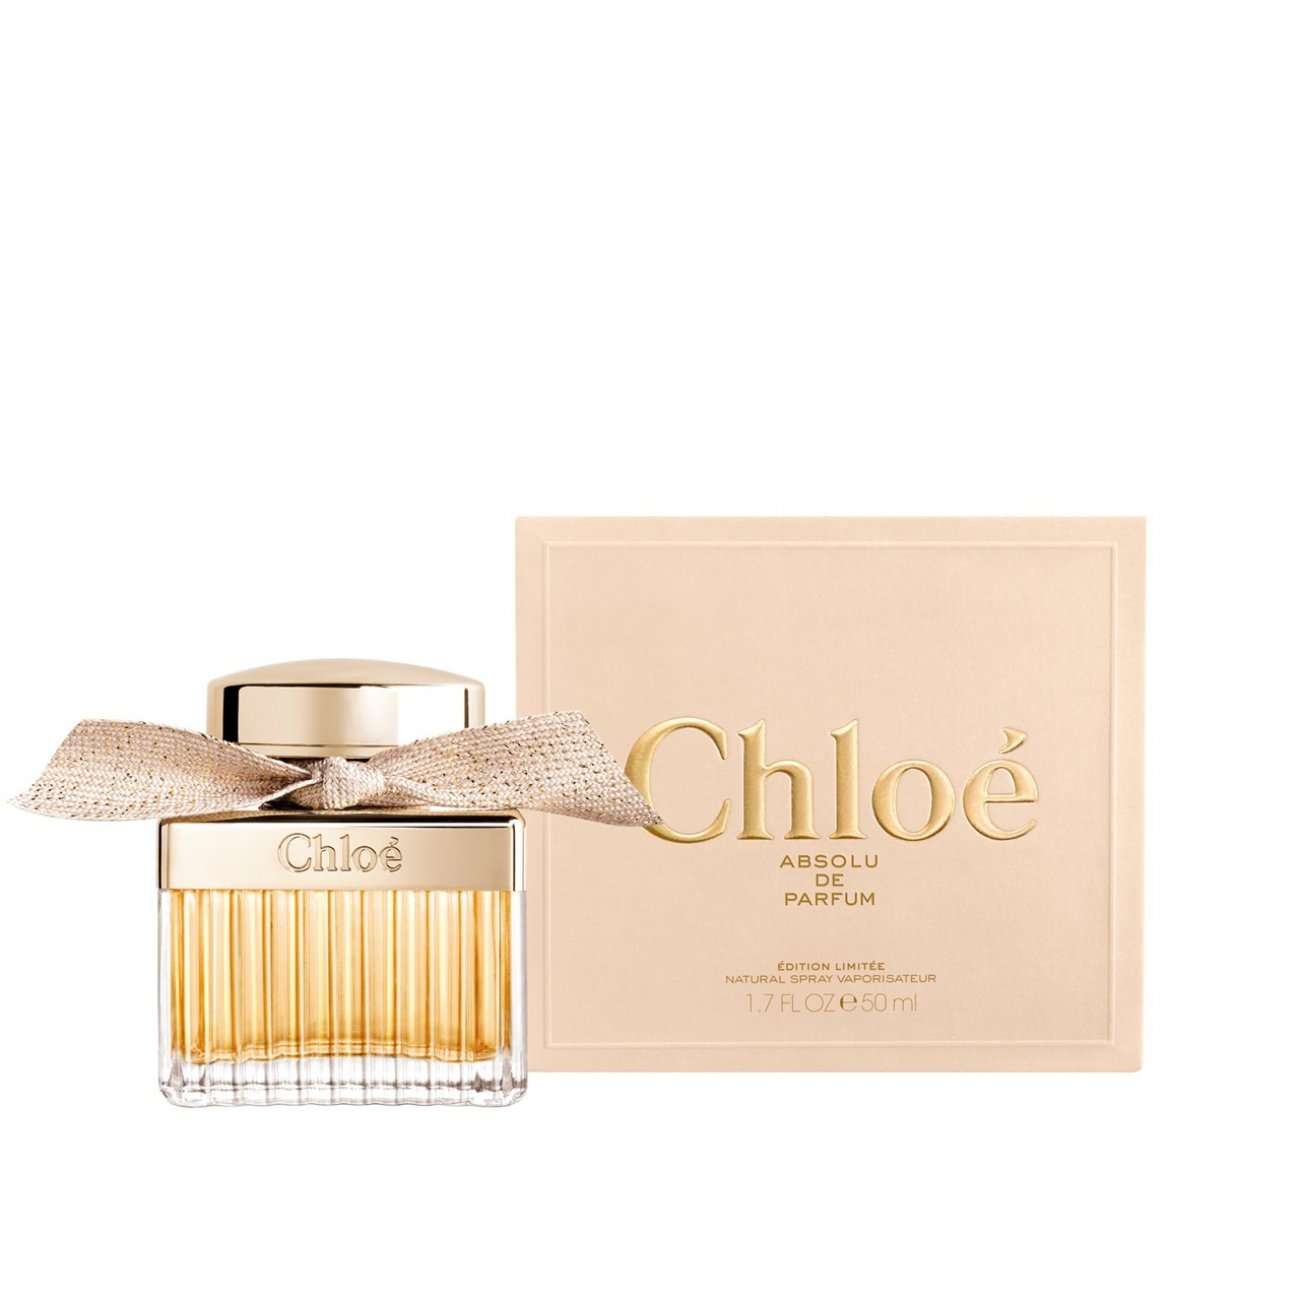 Buy Chloé Absolu de Parfum Eau de ·